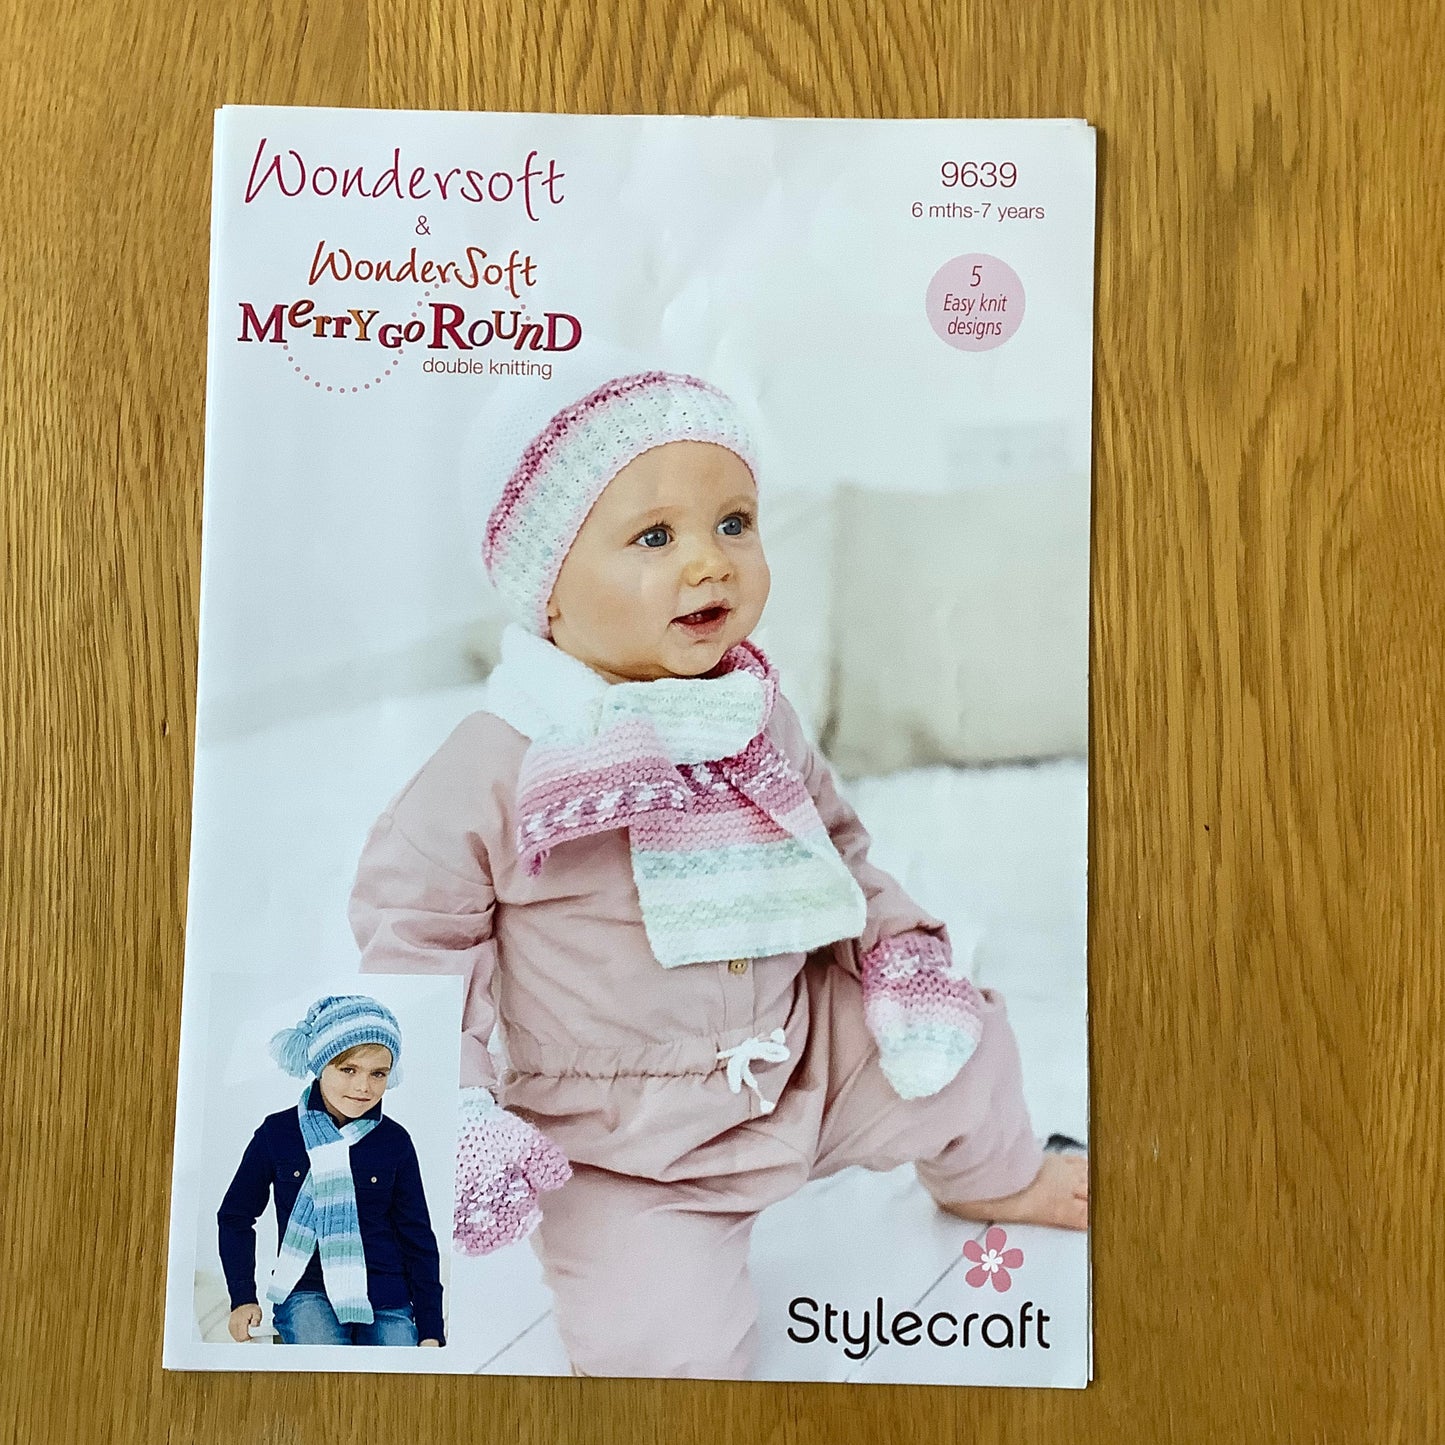 Stylecraft Wondersoft & Wondersoft Merry Go Round Double Knitting DK Pattern 6 Months - 7 Years 9639